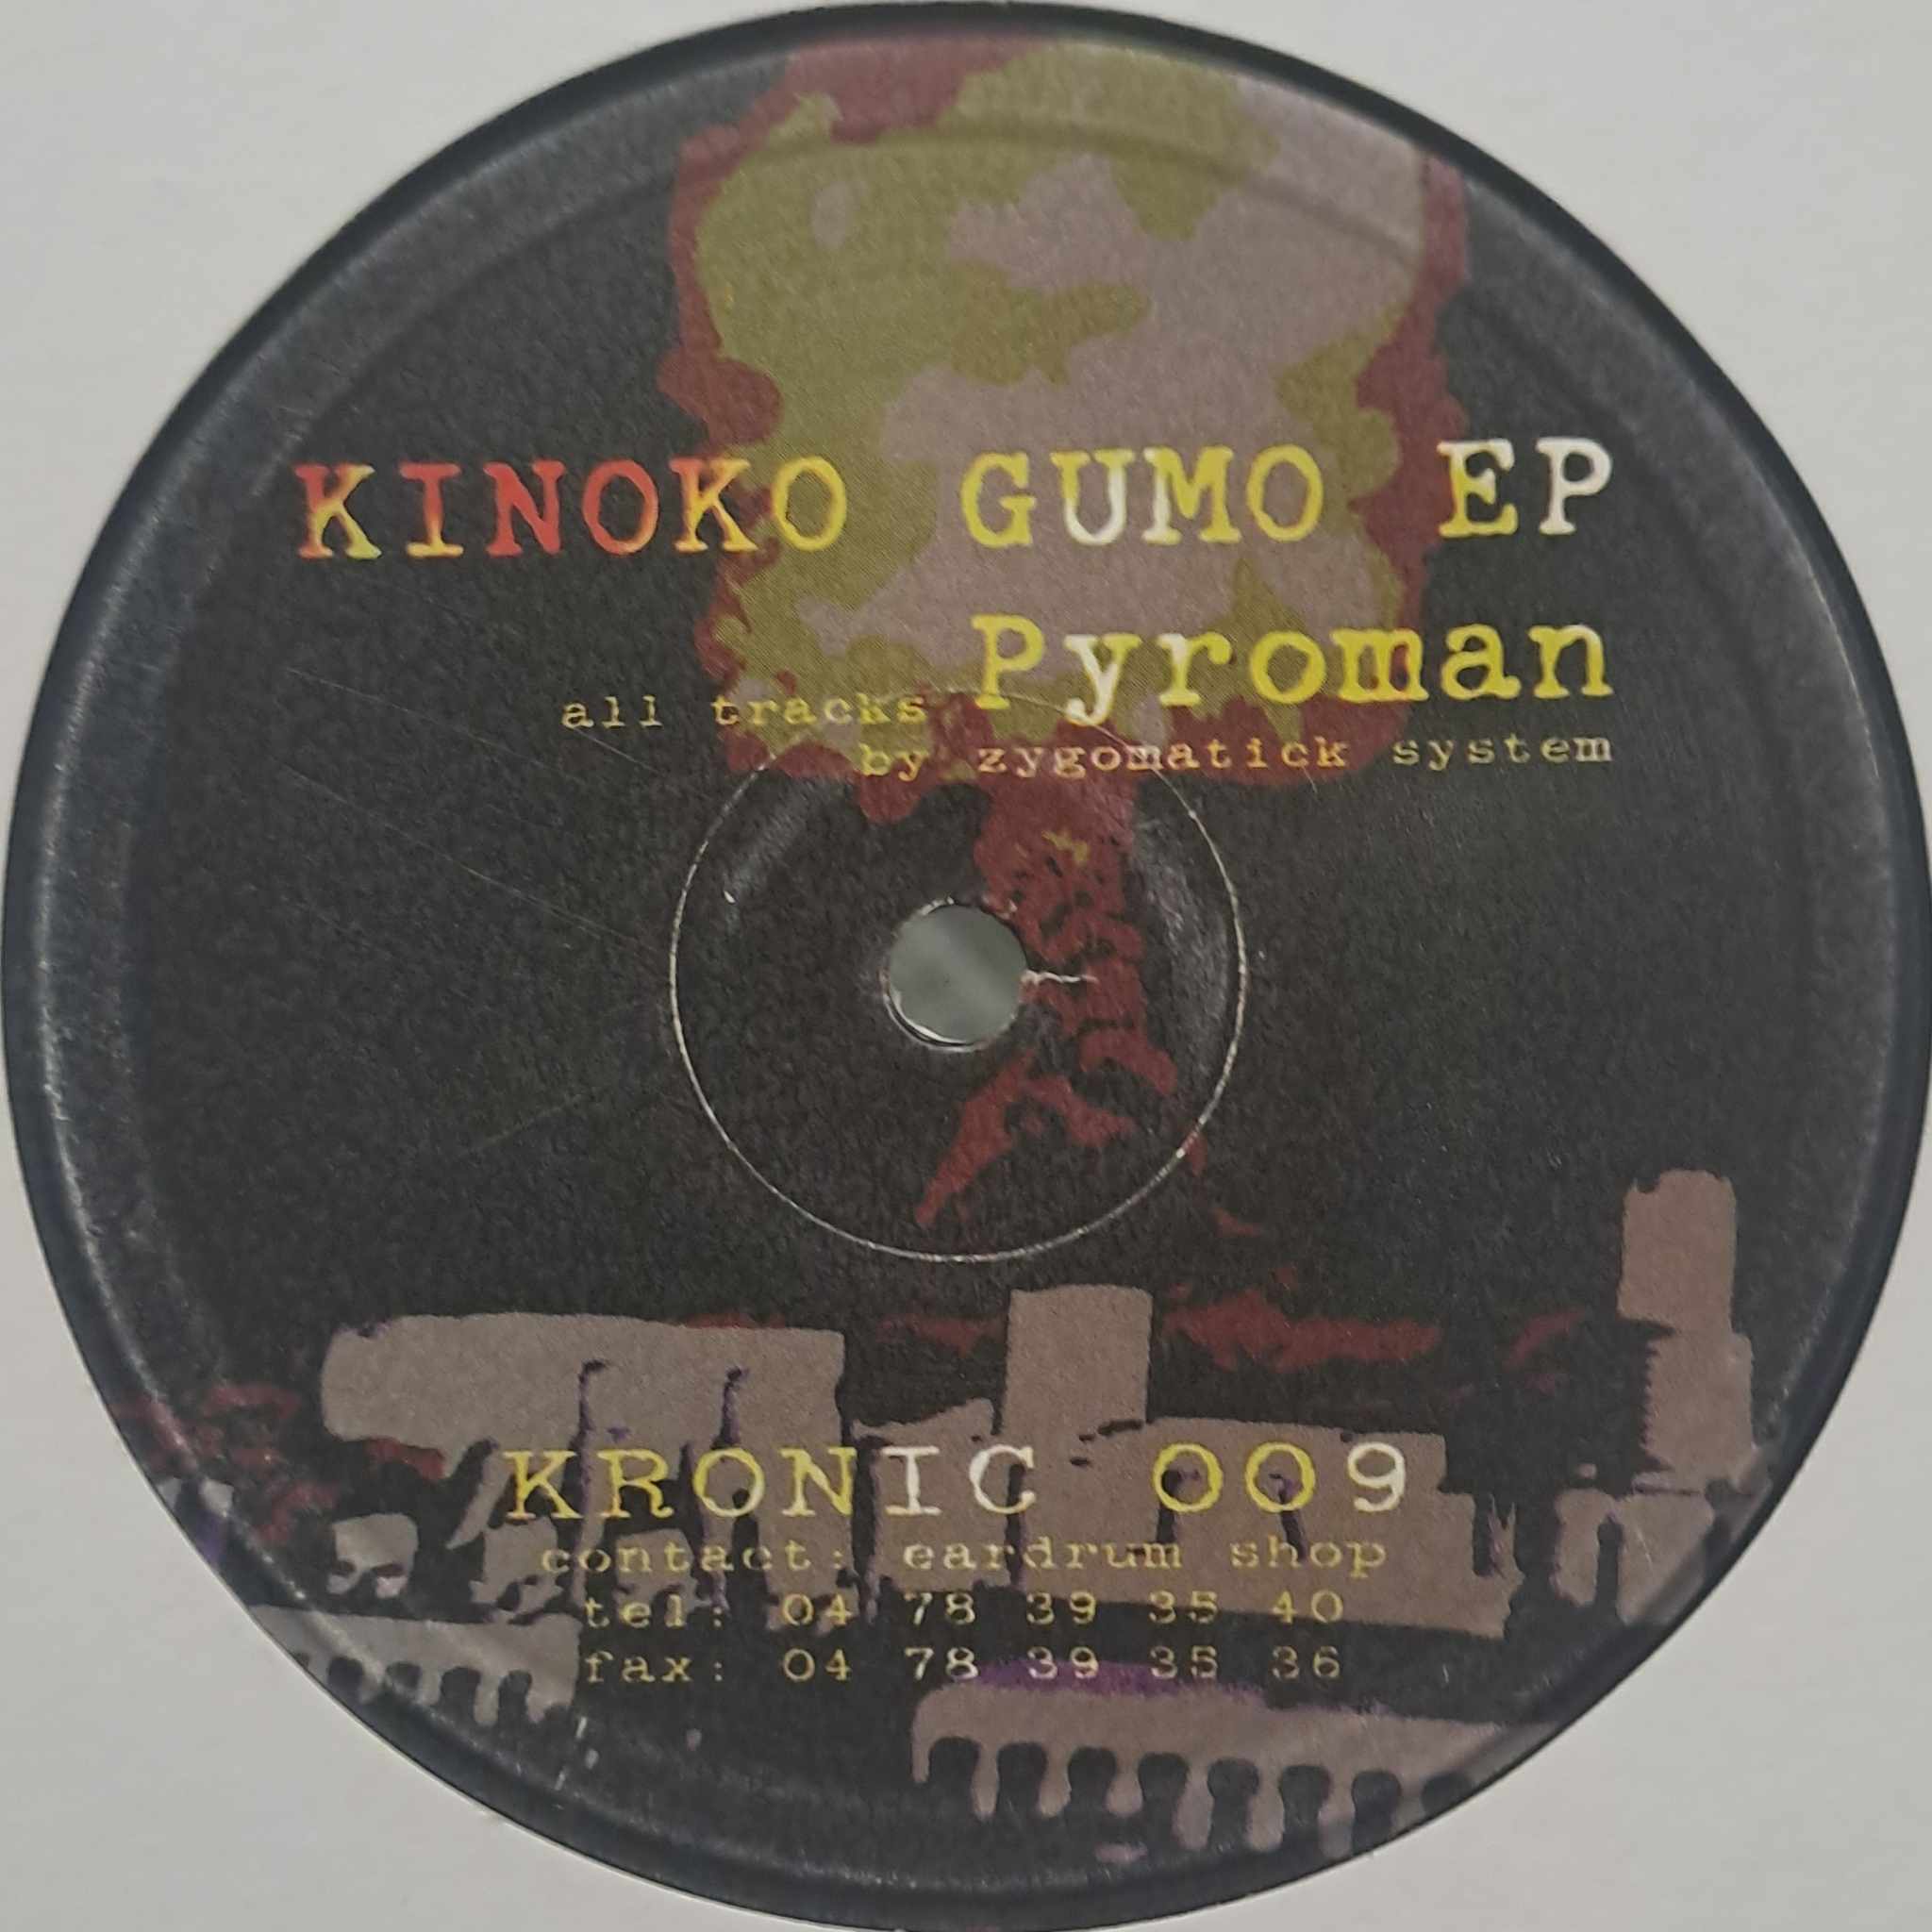 Kronic 009 - vinyle hardcore